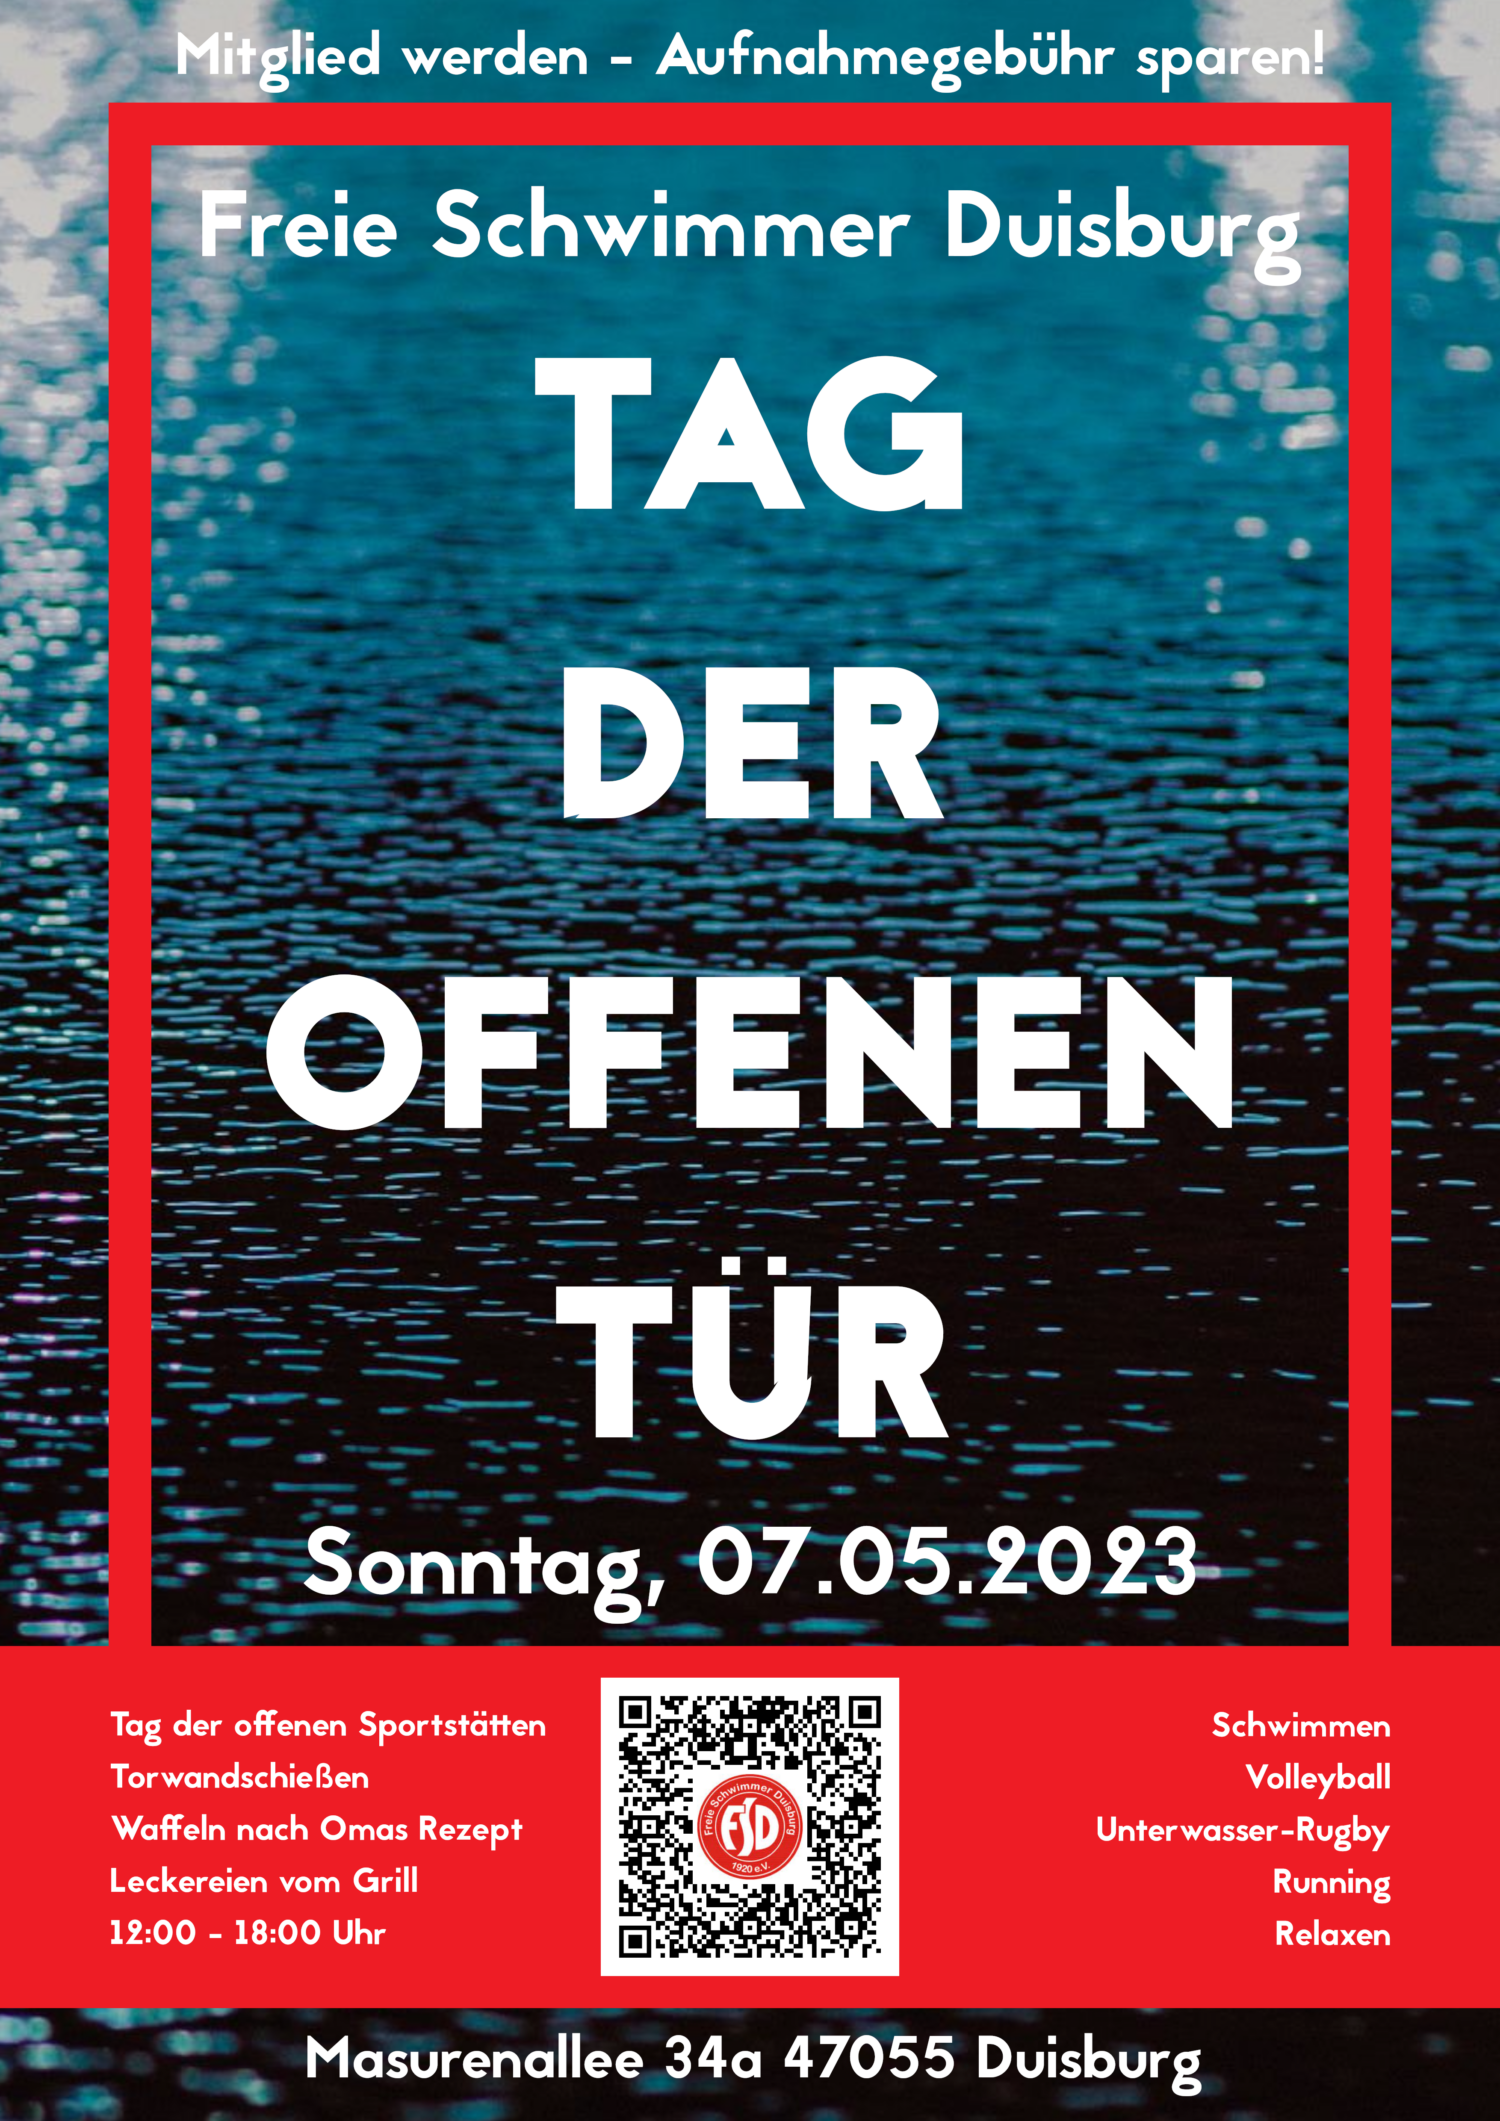 FSD-TagDerOffenenTuer-Plakat-2023